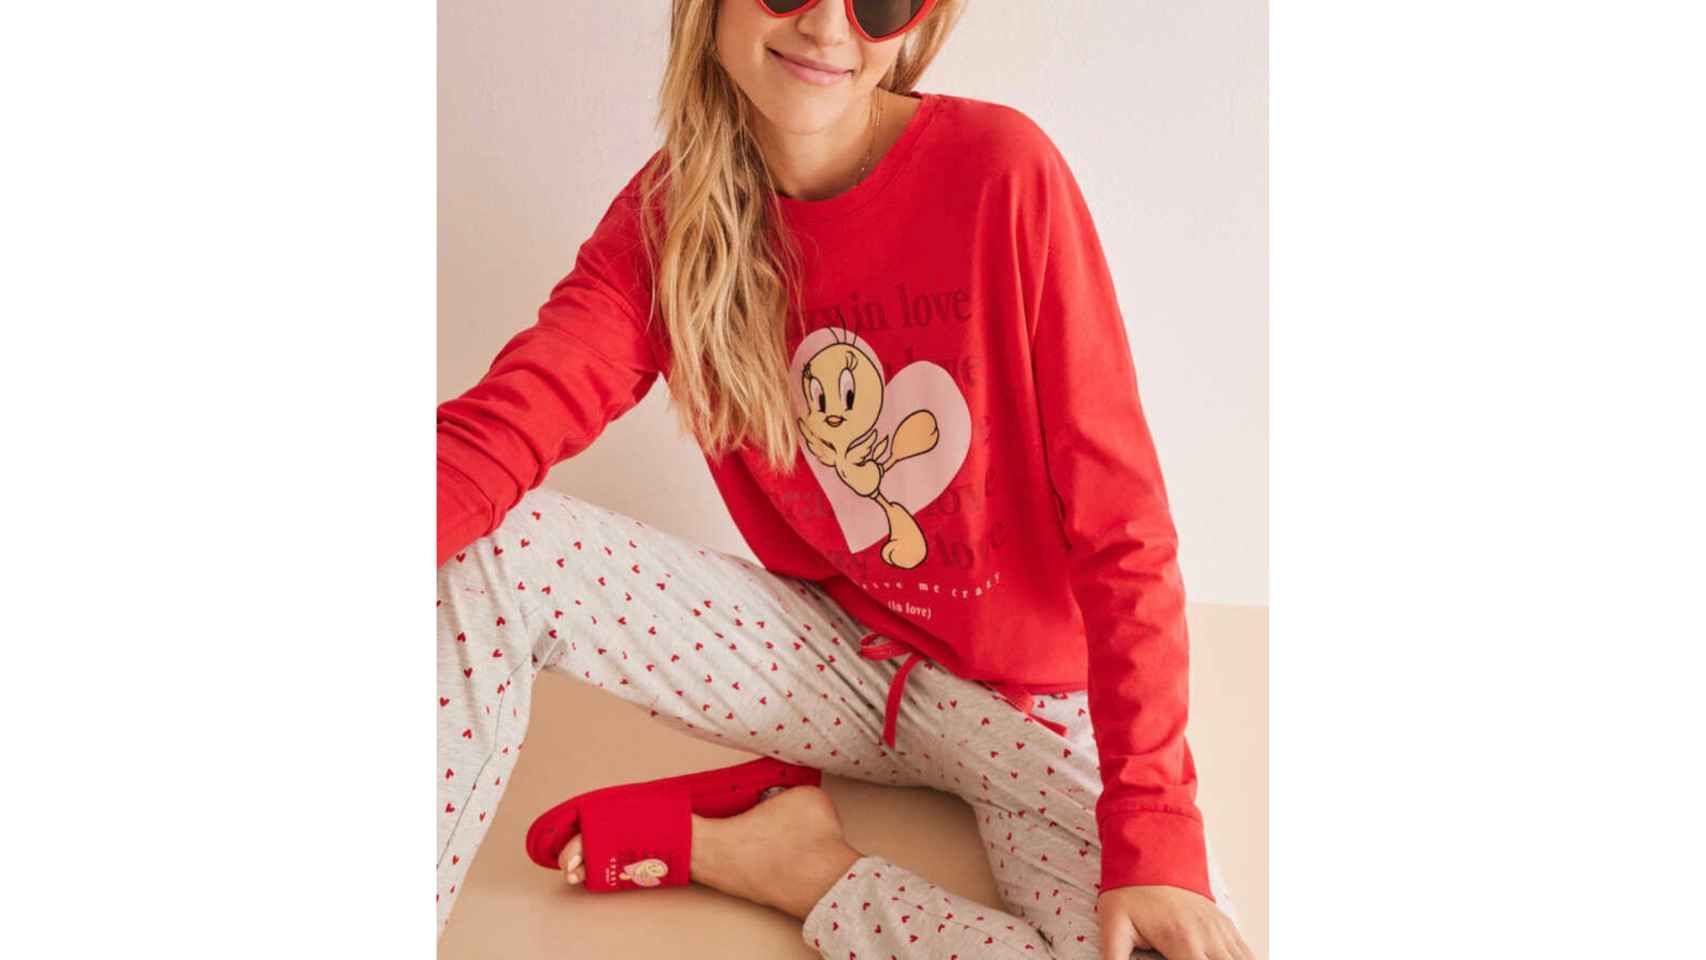 Pijama Piolín, Women'secret.